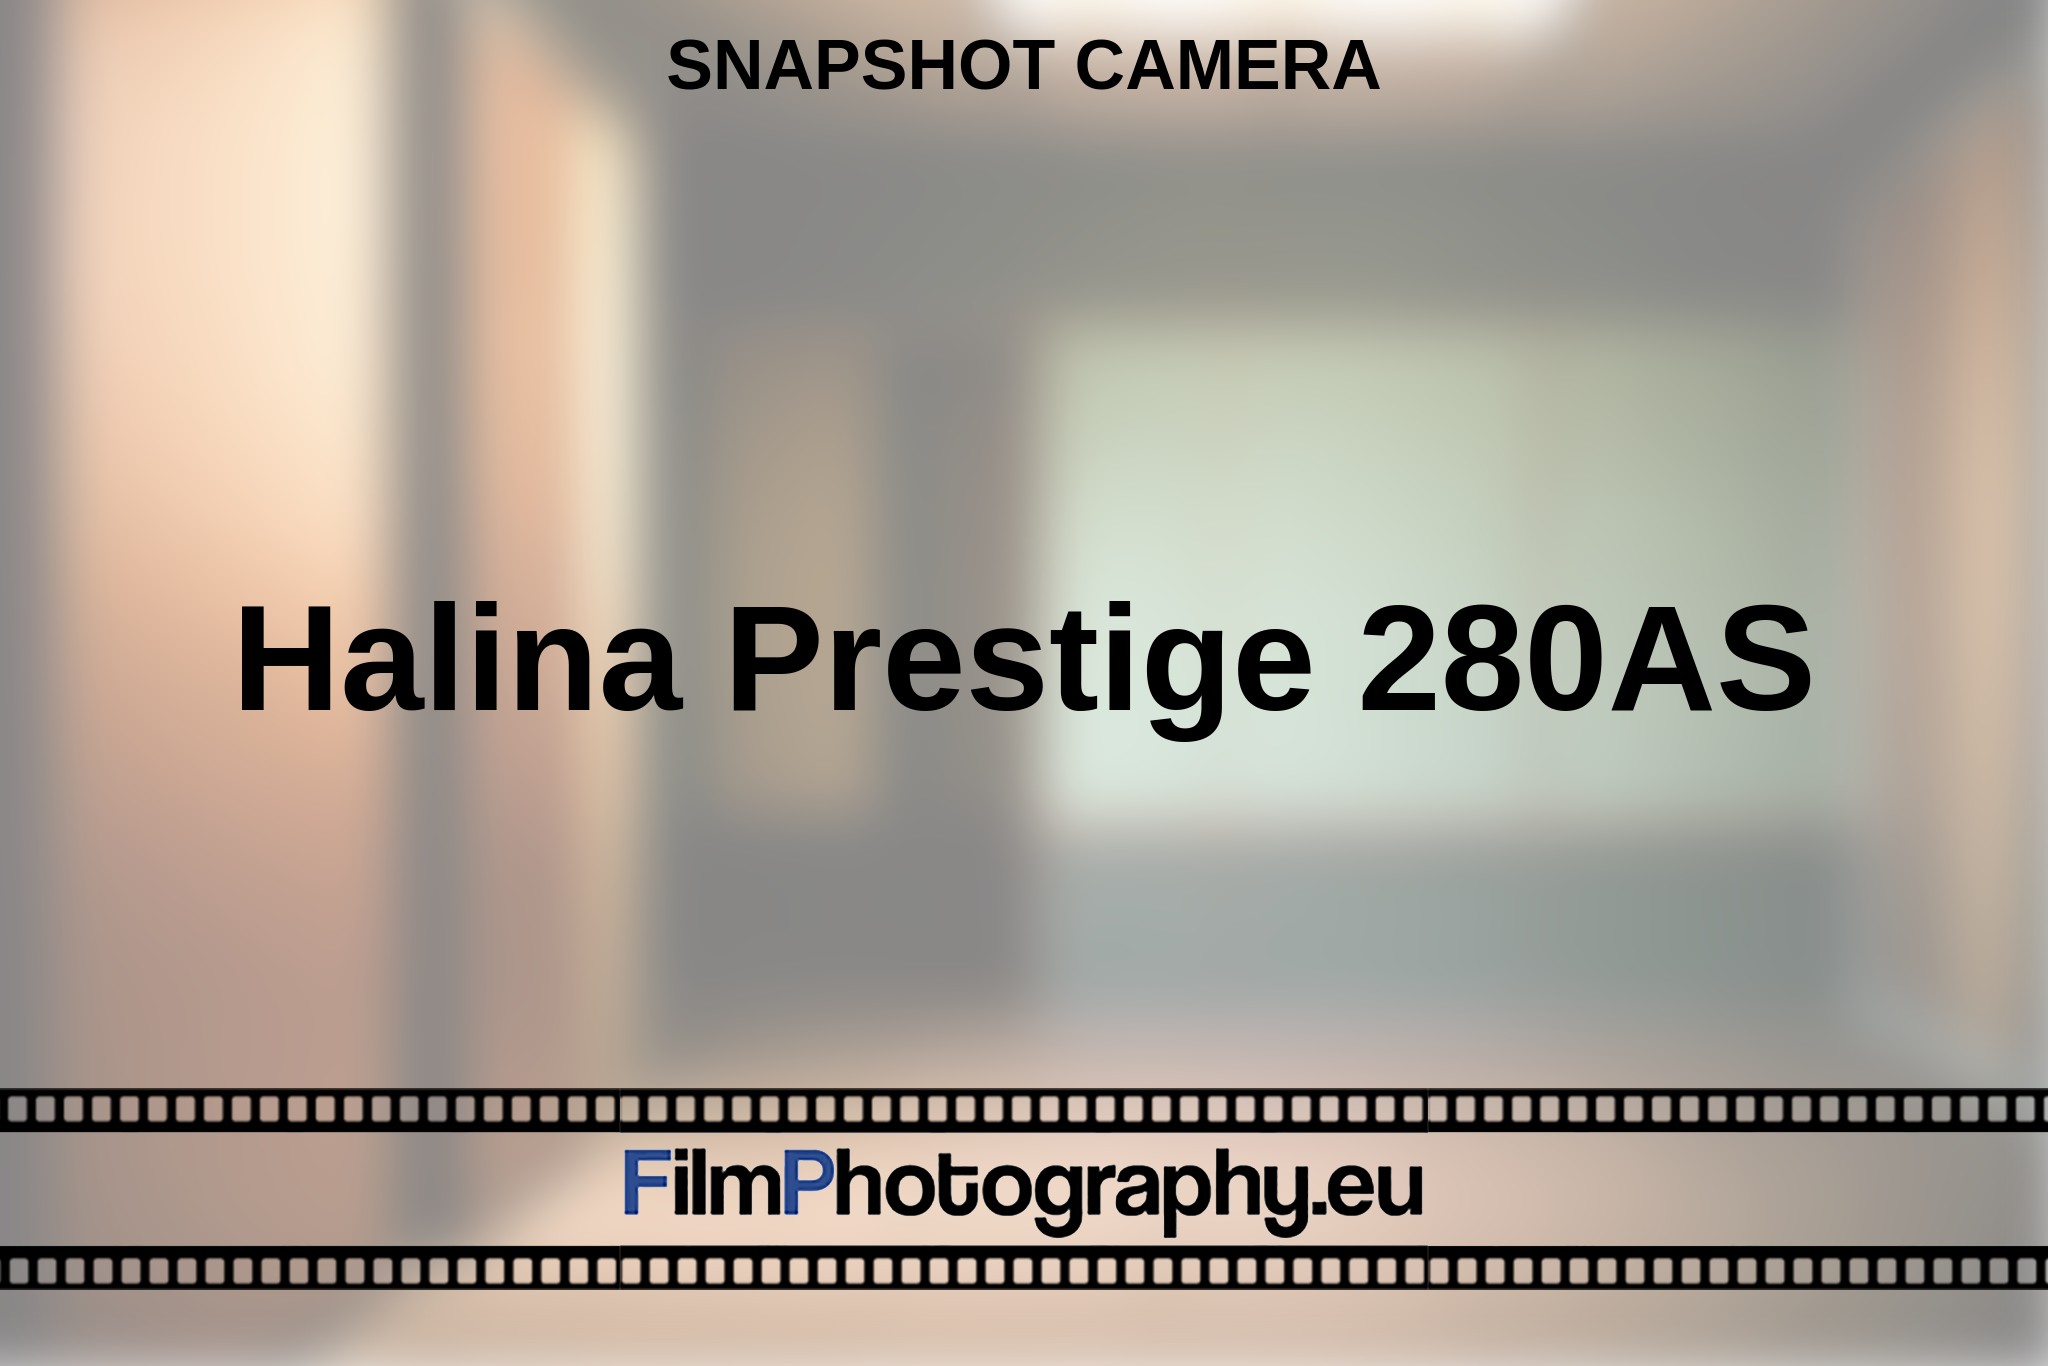 halina-prestige-280as-snapshot-camera-en-bnv.jpg